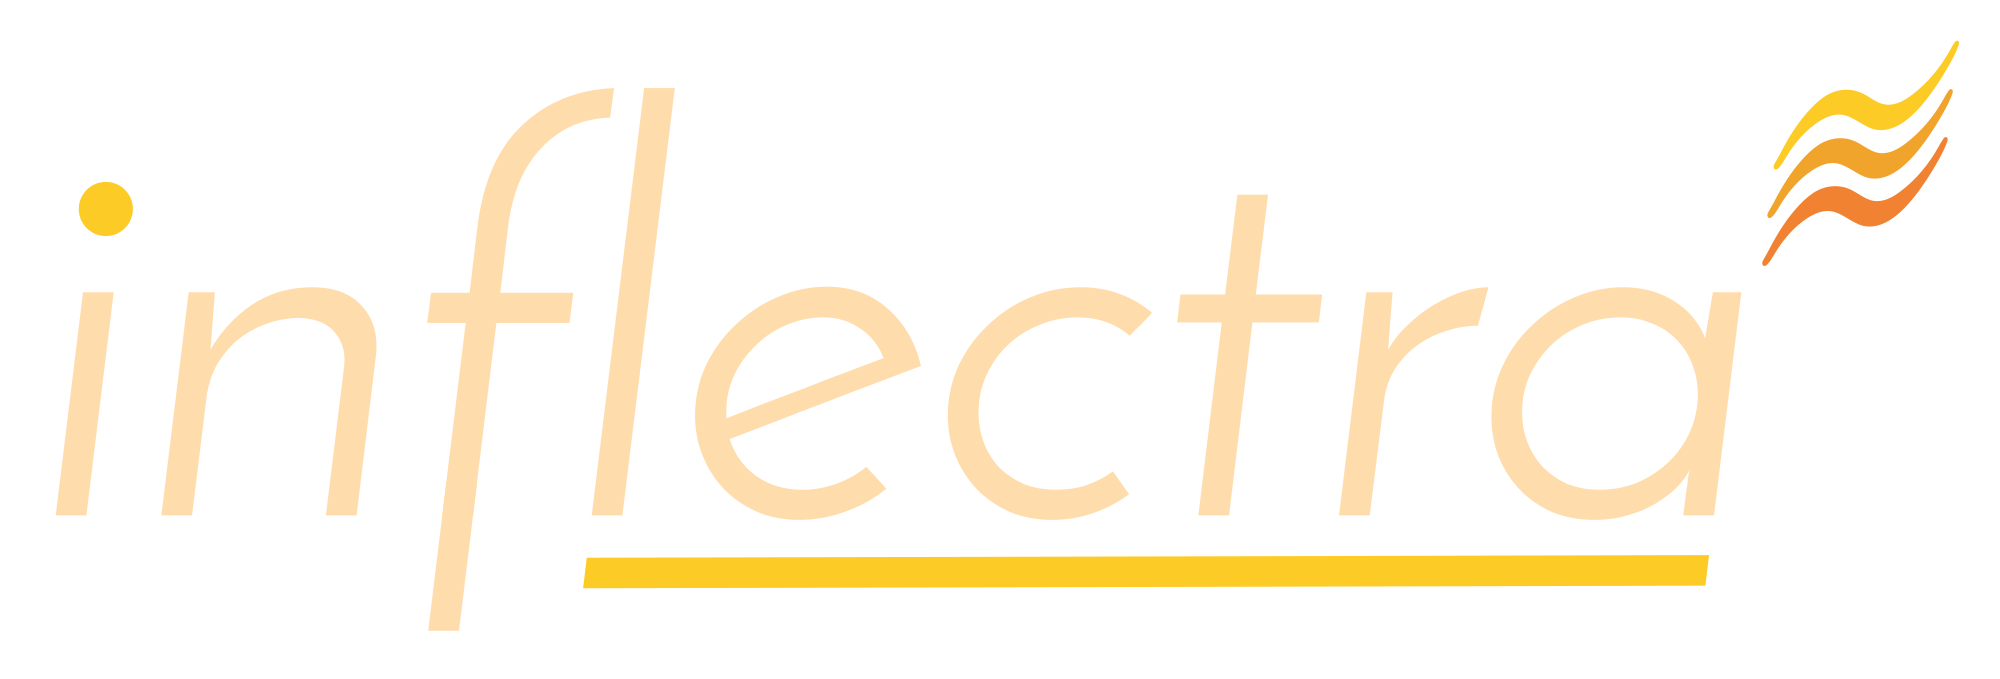 Inflectra Logo, Light, Transparent